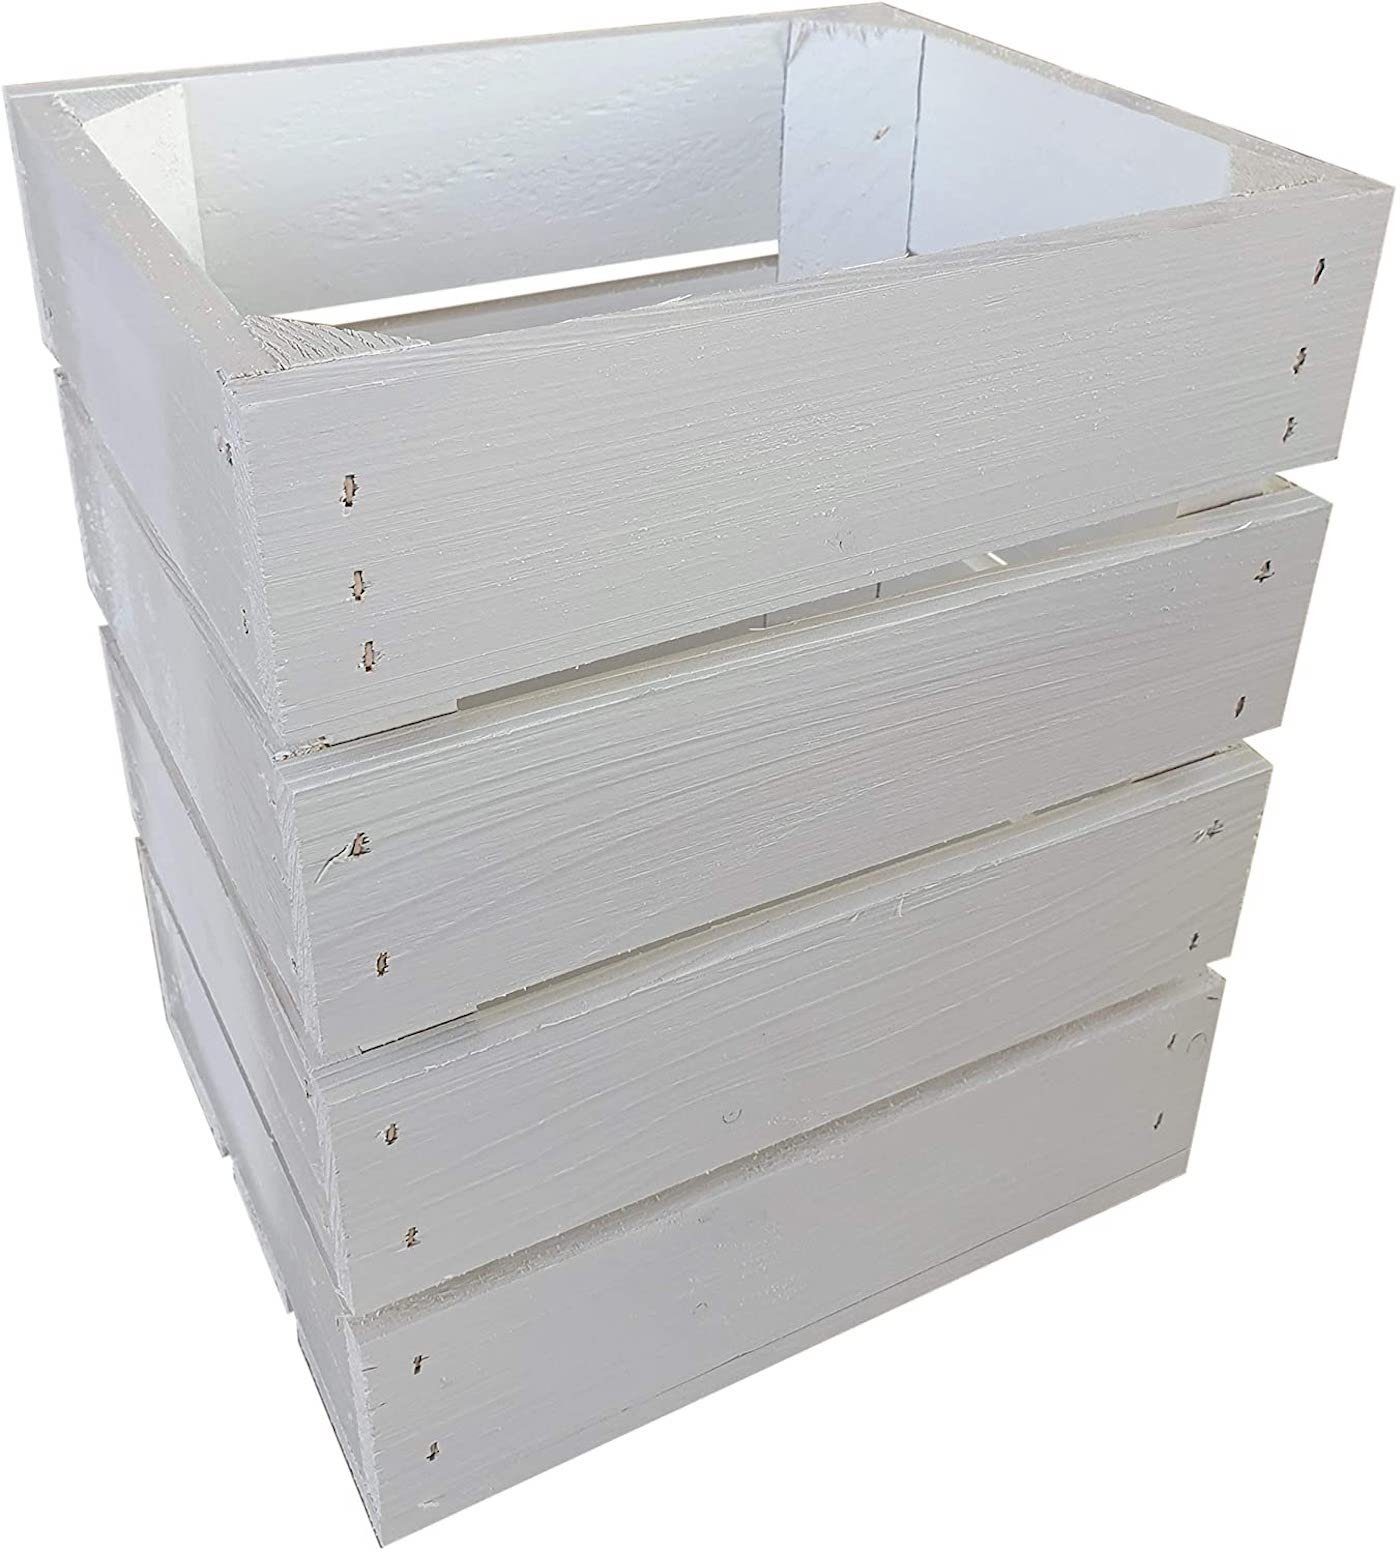 sunnypillow Holzkiste Holzkisten in vielen Farben zur Auswahl, Einzelkiste 25x20x30cm Weiß